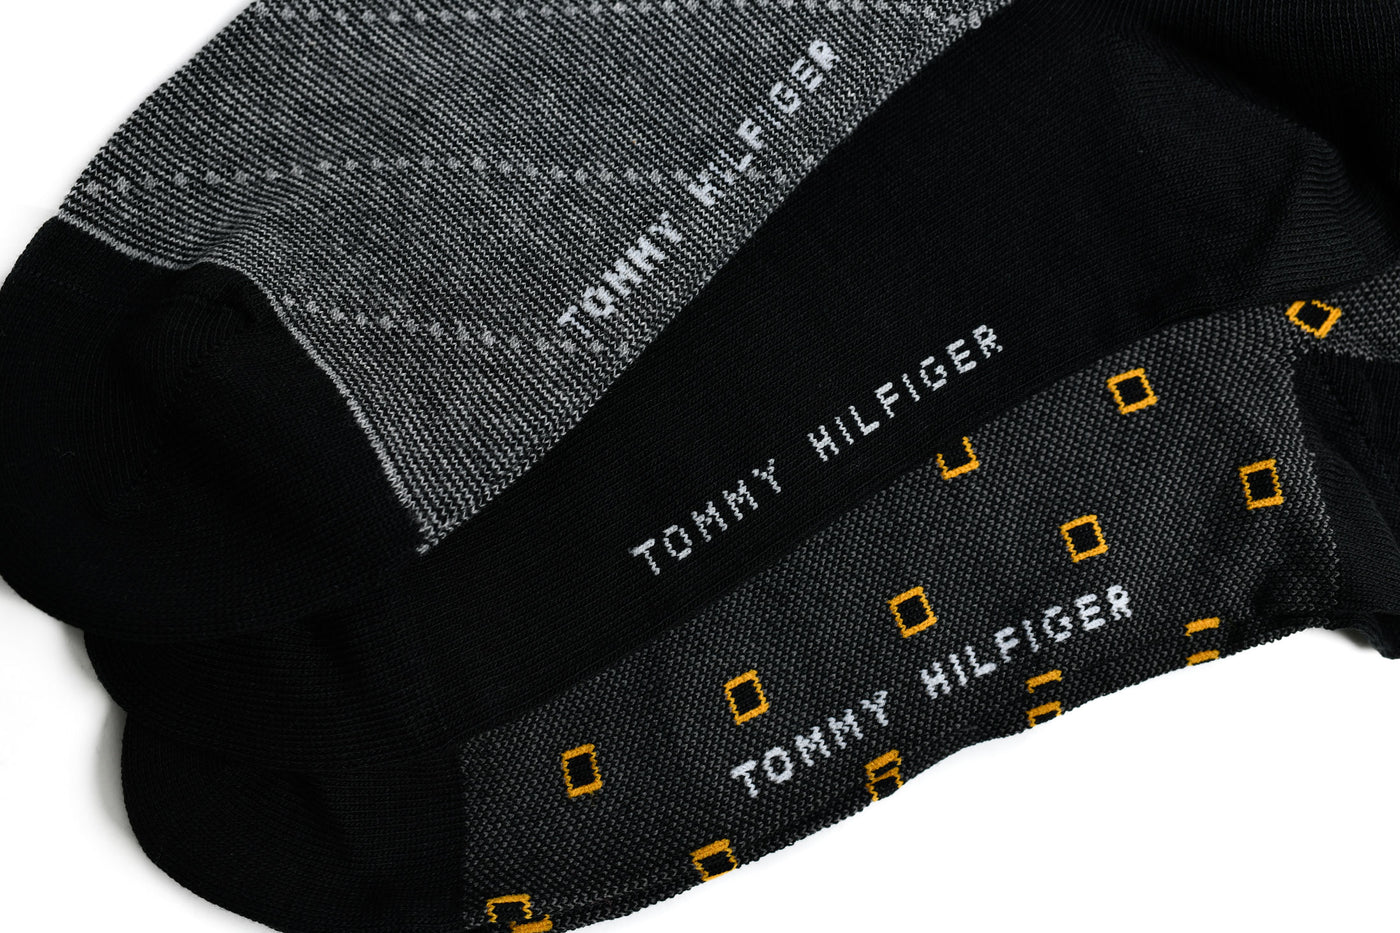 BOX - Tommy Hilfiger Man's Black Socks